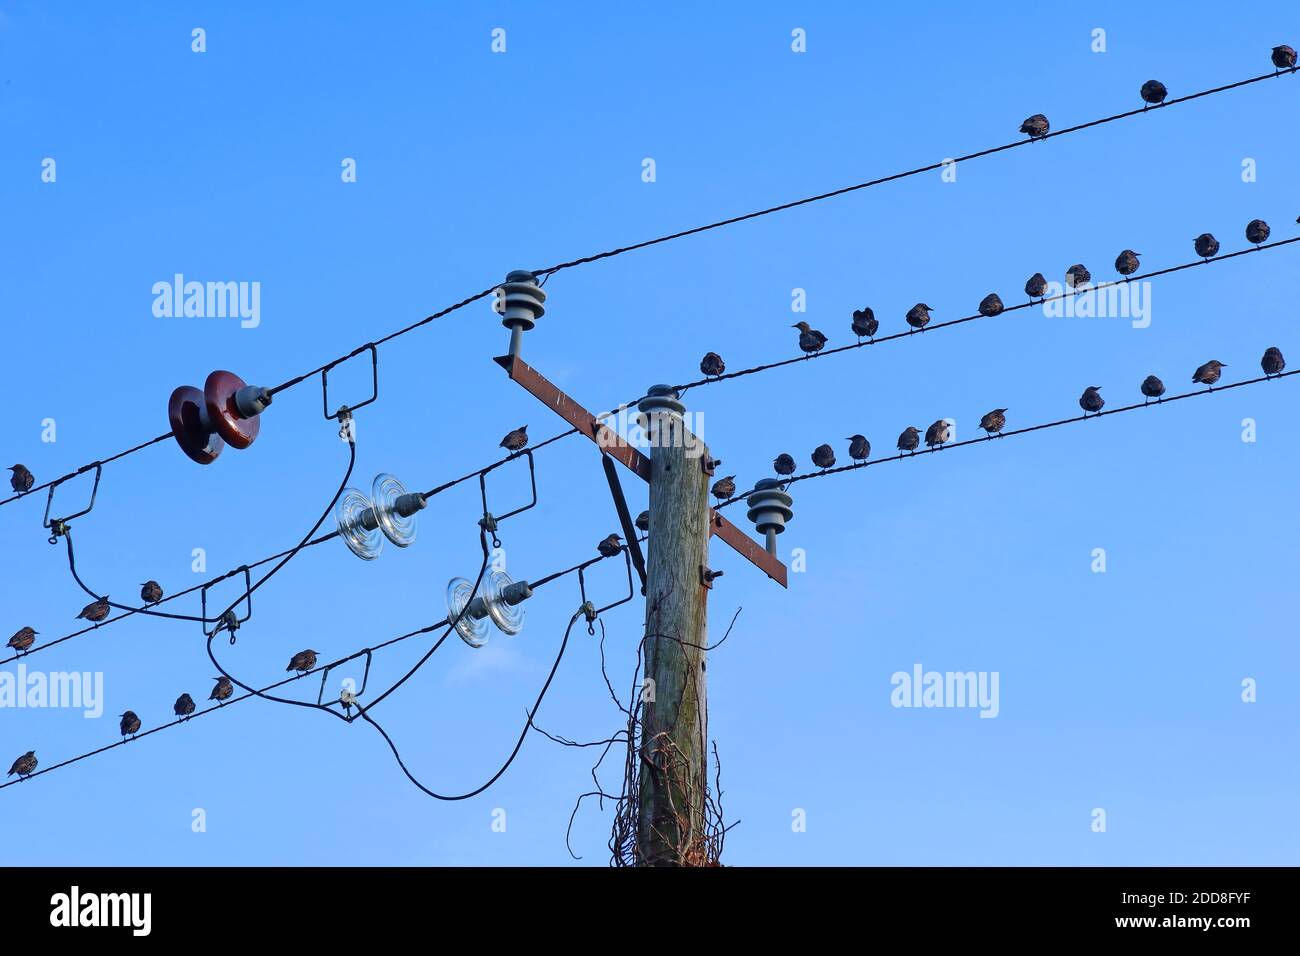 Oiseaux sur les câbles électriques, Great Budworth, Northwich, Cheshire, Angleterre, Royaume-Uni Banque D'Images